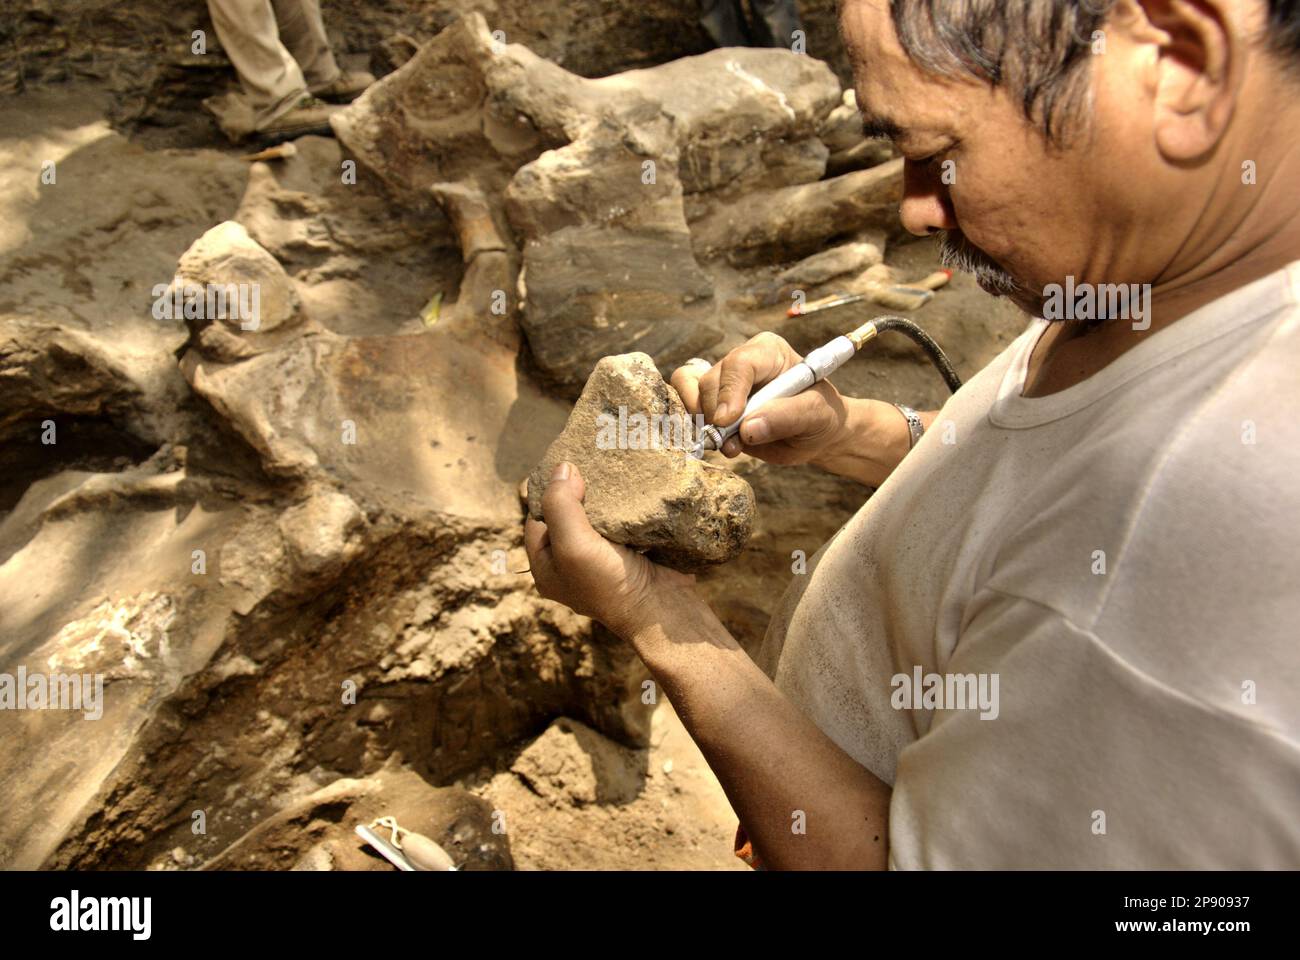 Fachroel Aziz, professeur de recherche en paléontologie des vertébrés, est photographié sur le site d'excavation d'Elephas hysudrindicatus, une espèce d'éléphant disparue vivant pendant l'époque du Pléistocène, plus tard connue sous le nom d'éléphant de Blora, à Sunggun, Mendalem, Kradenan, Blora, Central Java, Indonésie. Banque D'Images